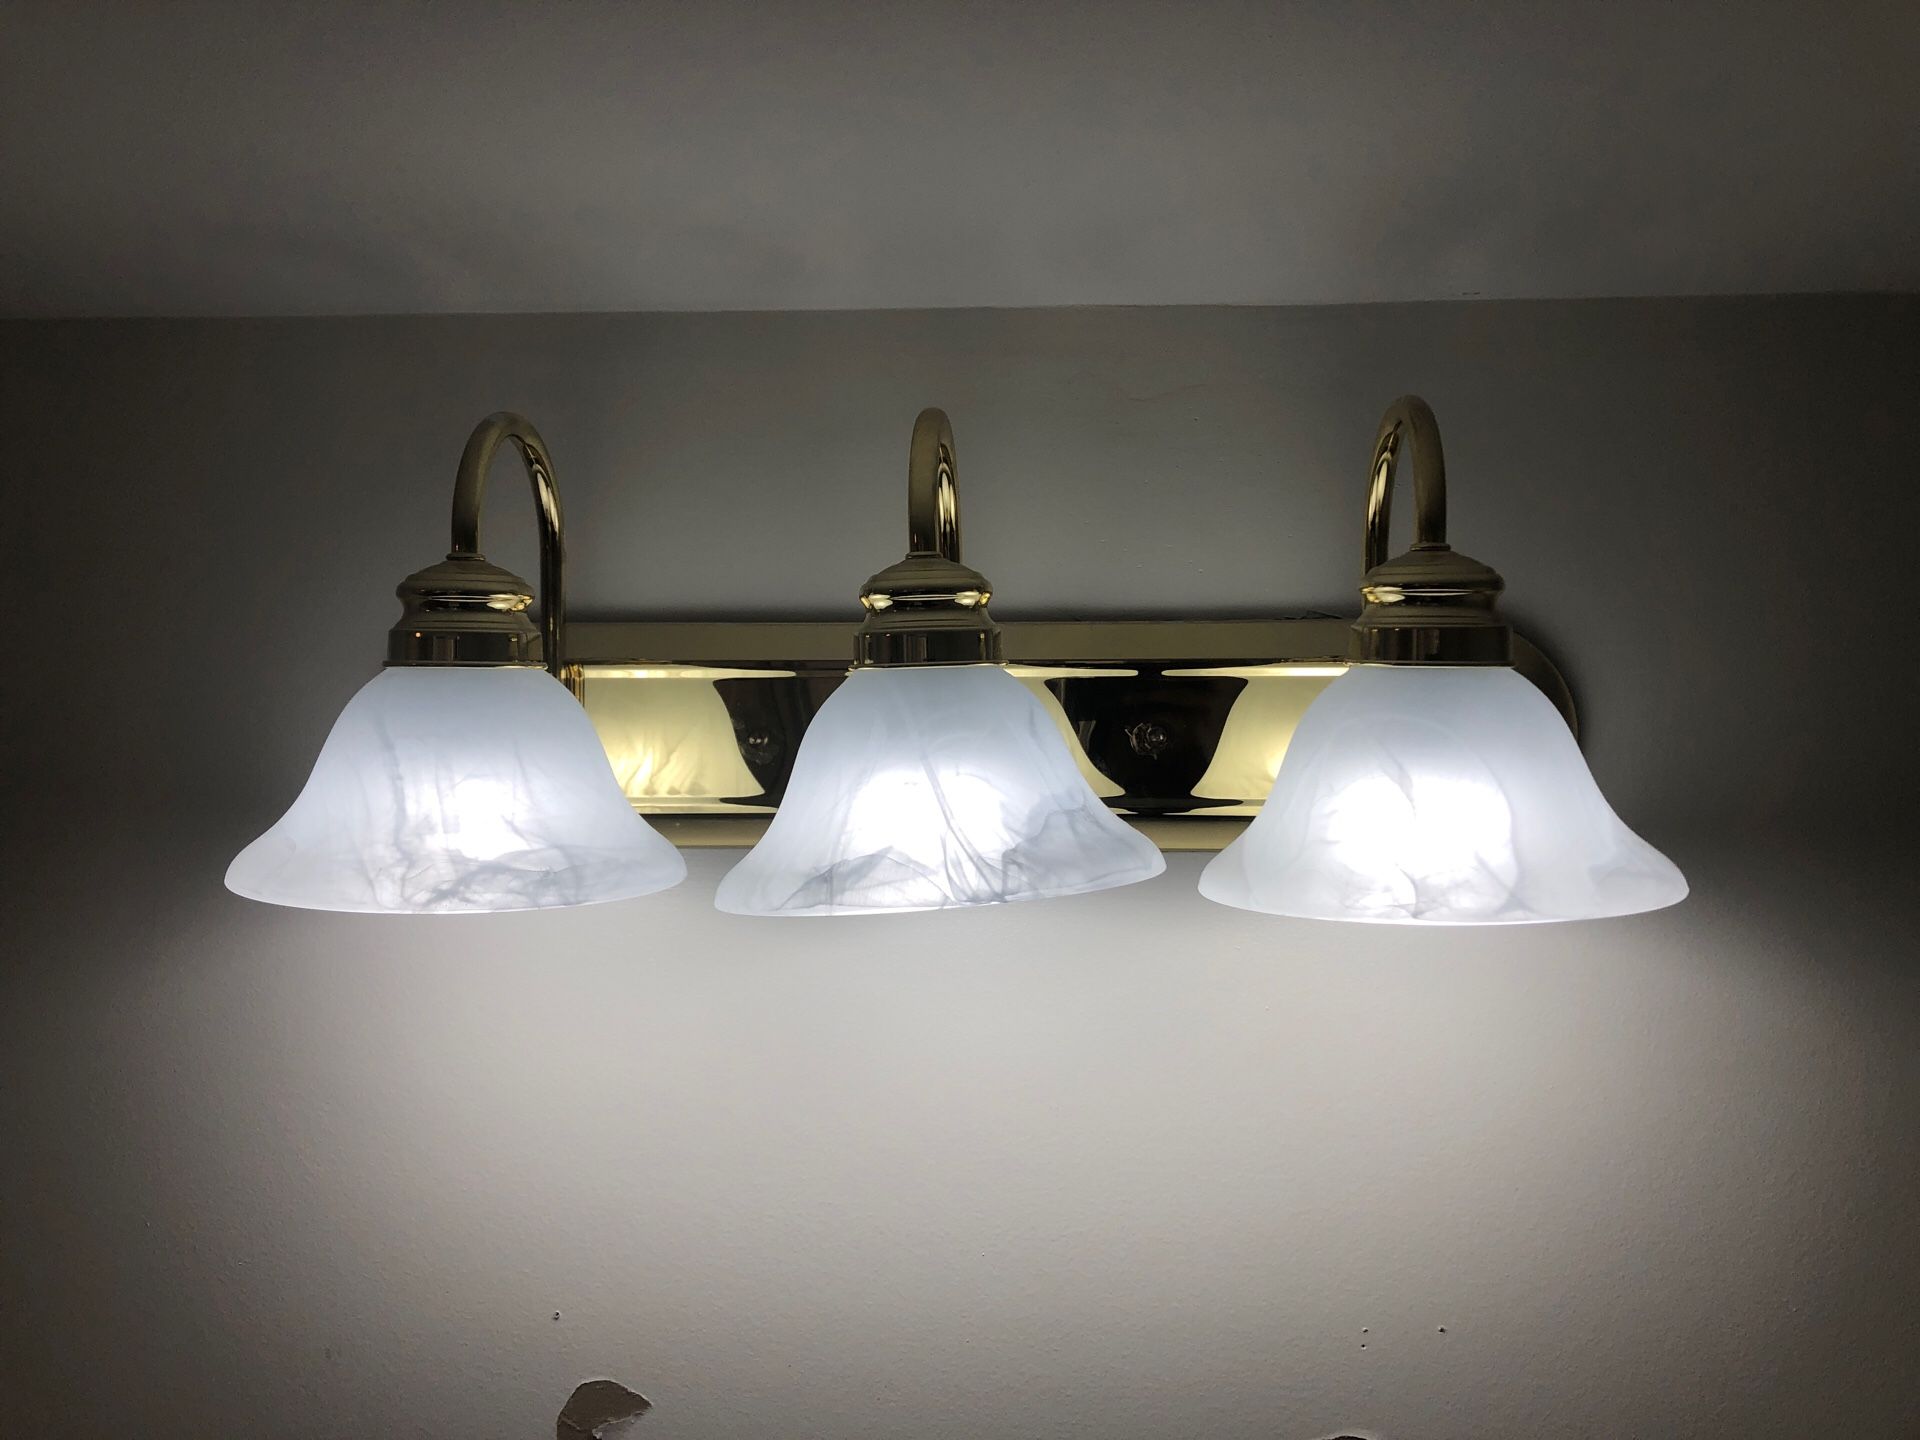 3 bulb light